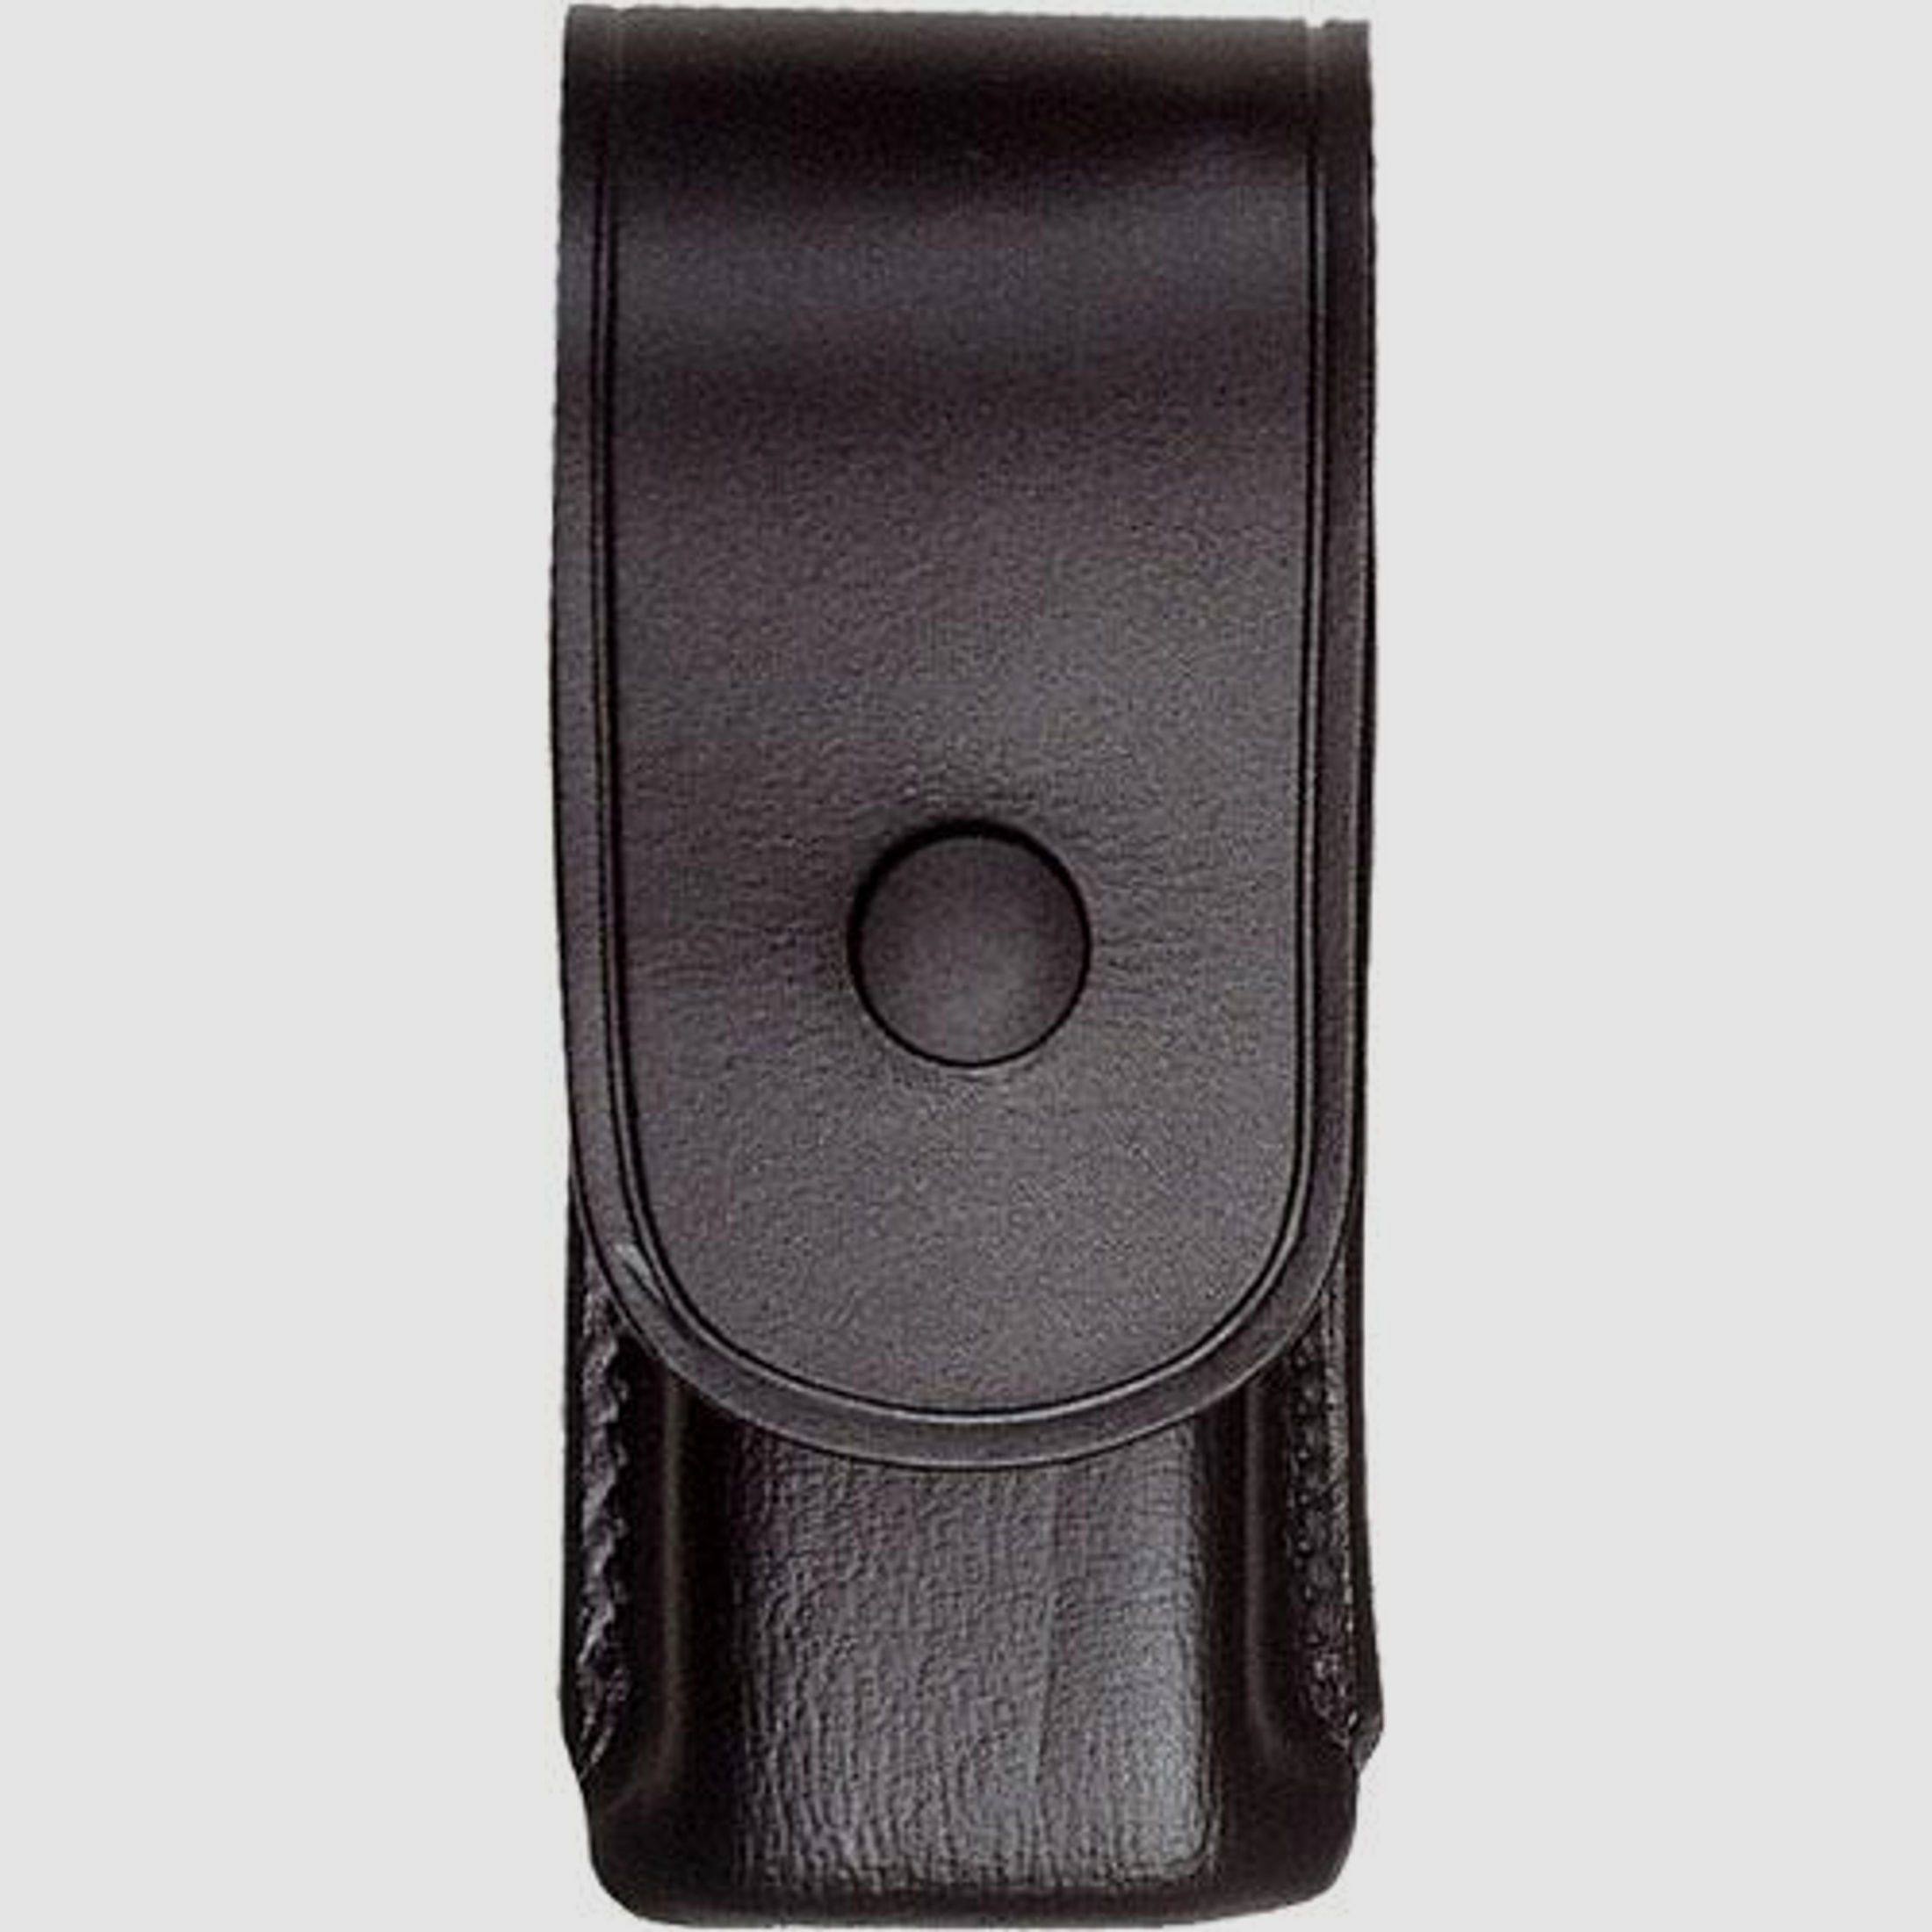 SICKINGER Magazintasche 9mm zweireihig braun Glock 17 63817 Magazin Box m.Lasche